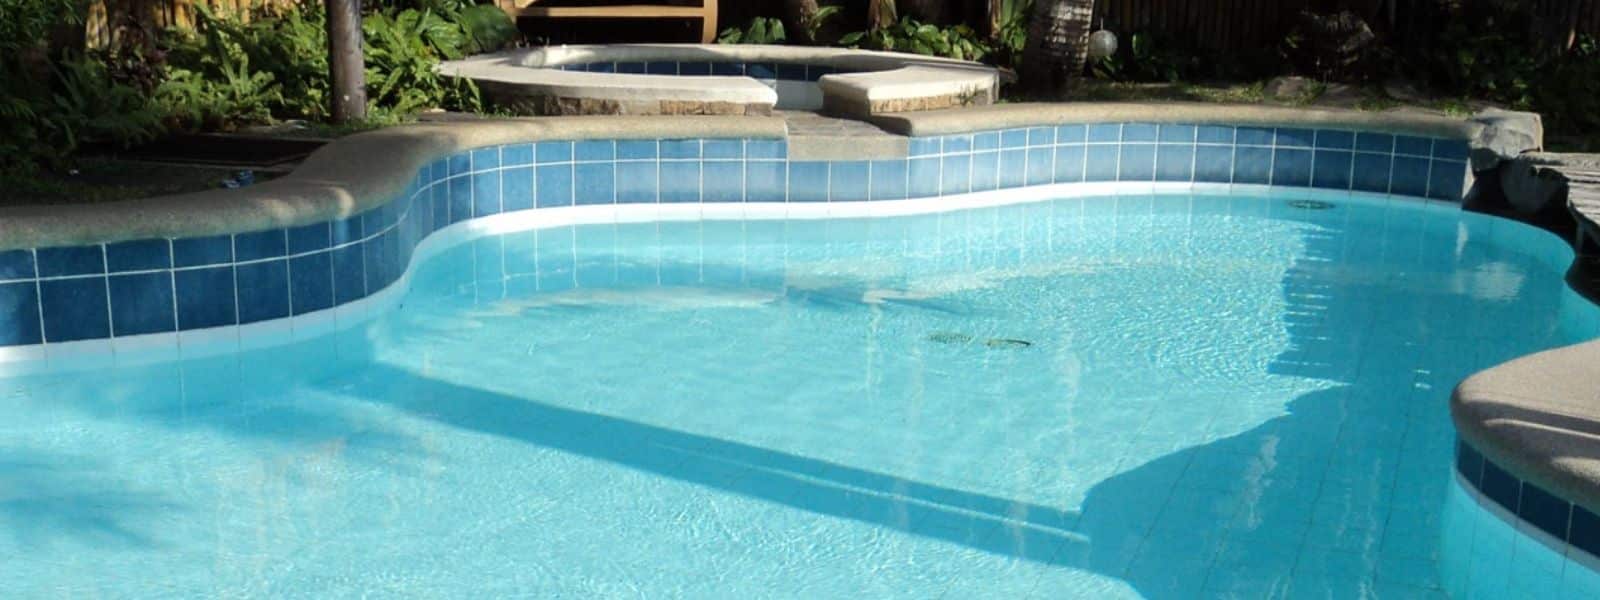 Redox y cloro libre en piscinas ¿Qué relación hay